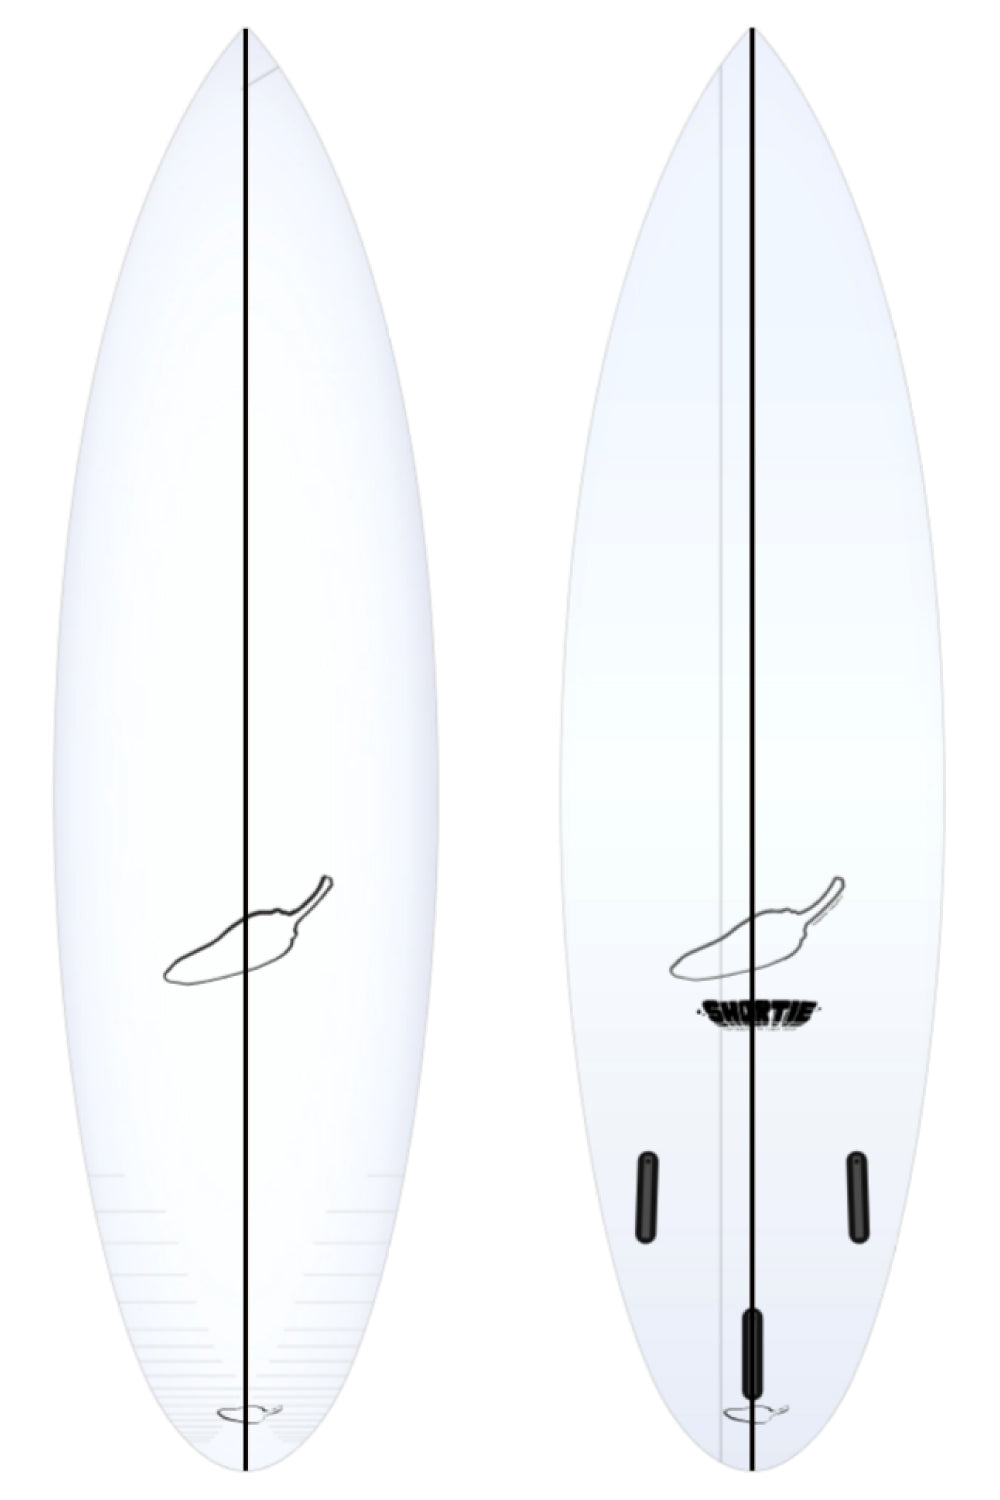 Chilli Shortie Surfboard - Round Tail